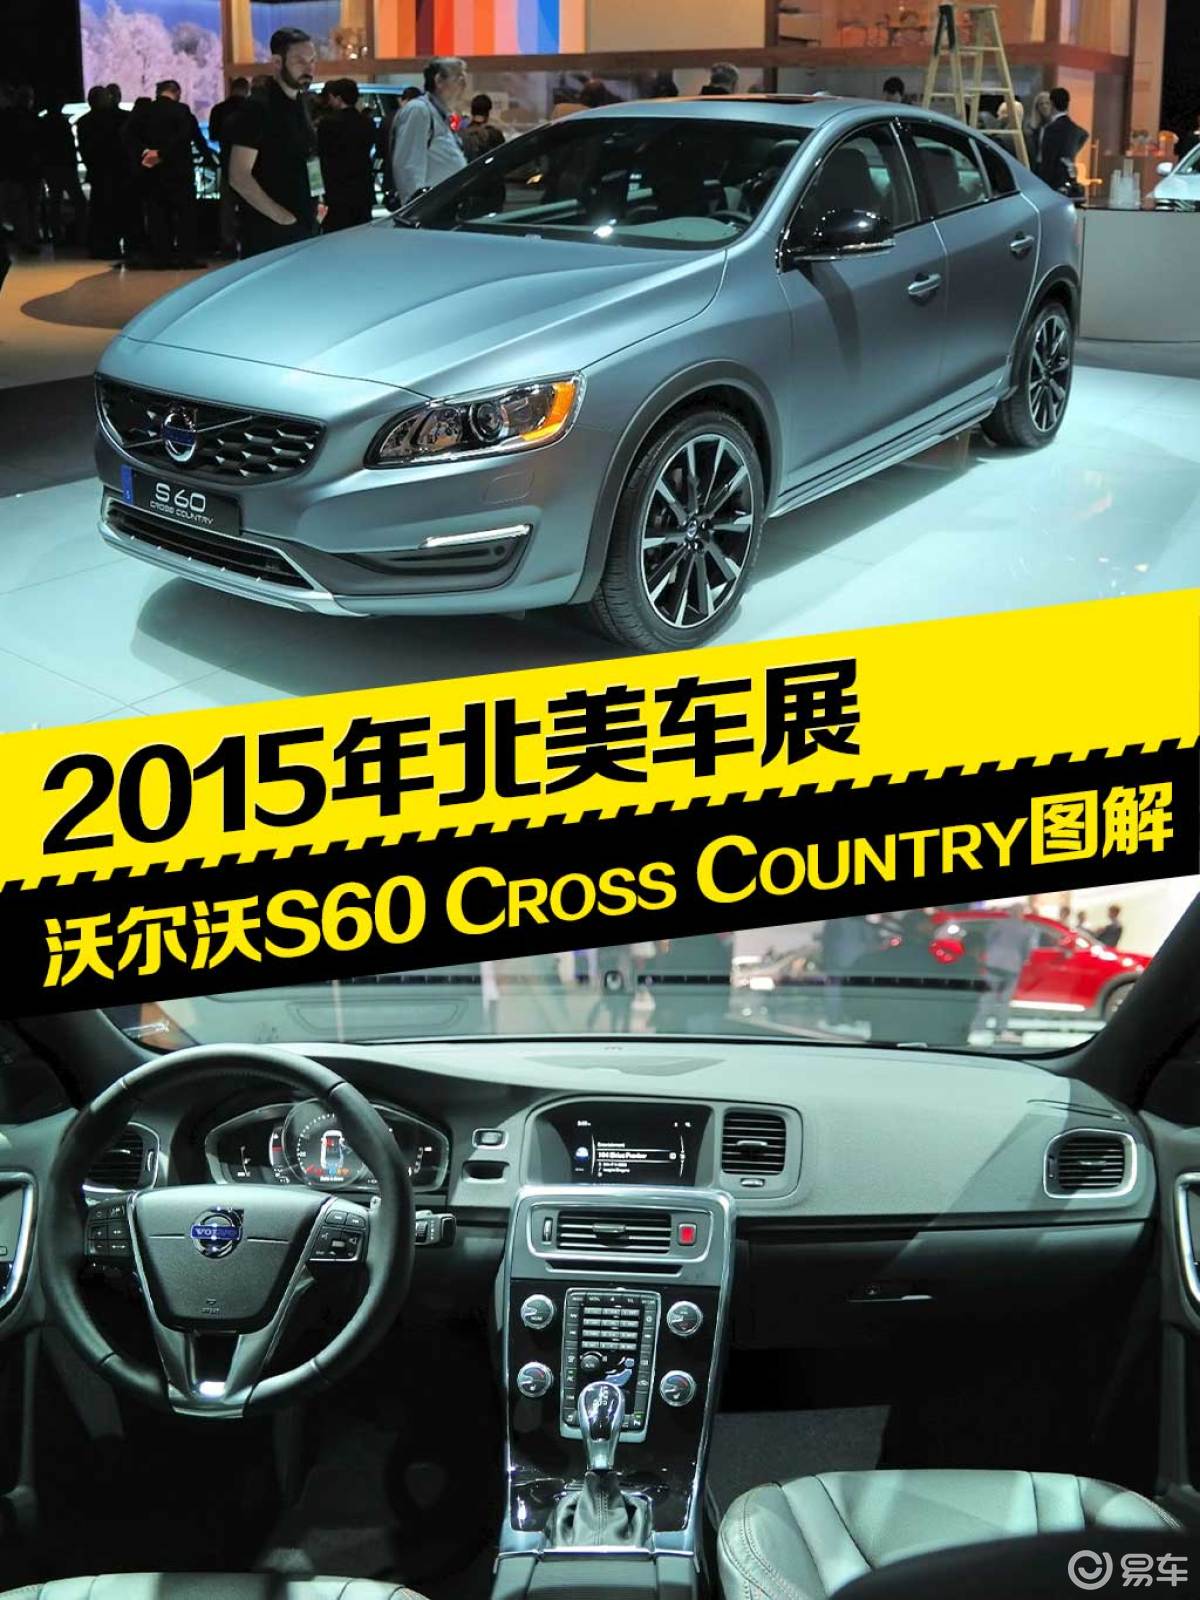 2015北美车展S60 Cross Country图解